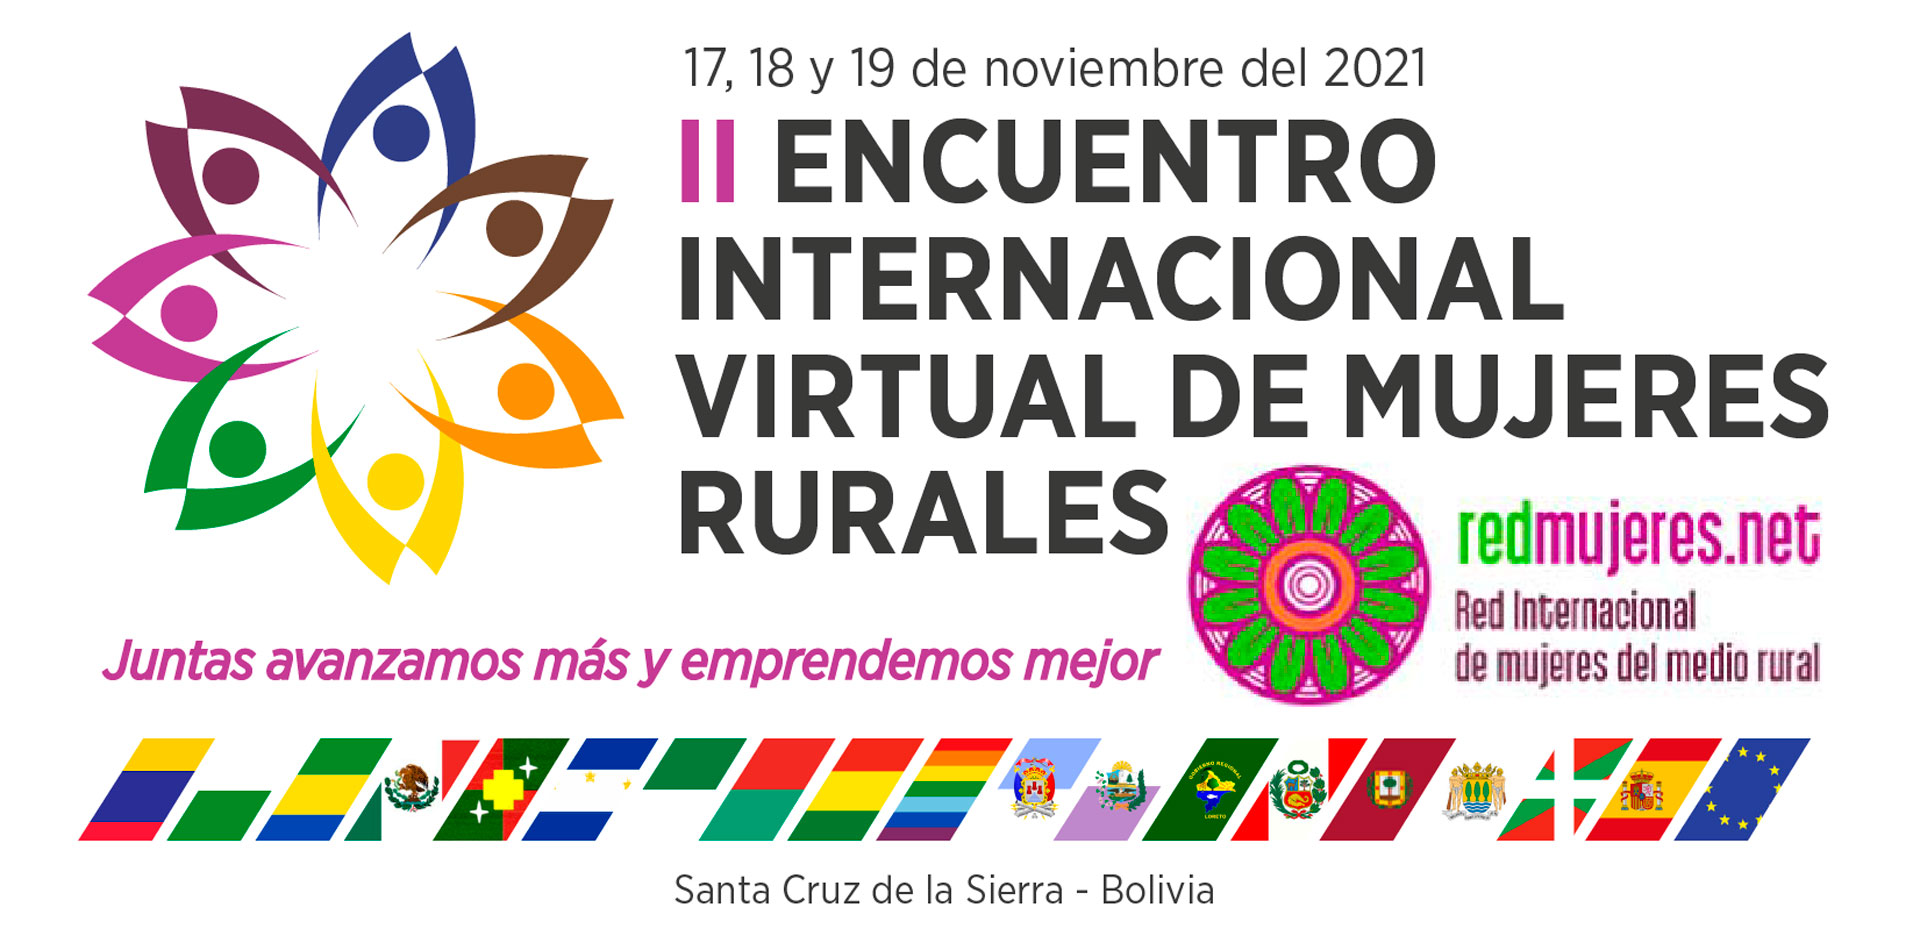 II-encuentro-internacional-virtual-mujeres-rurales-portada